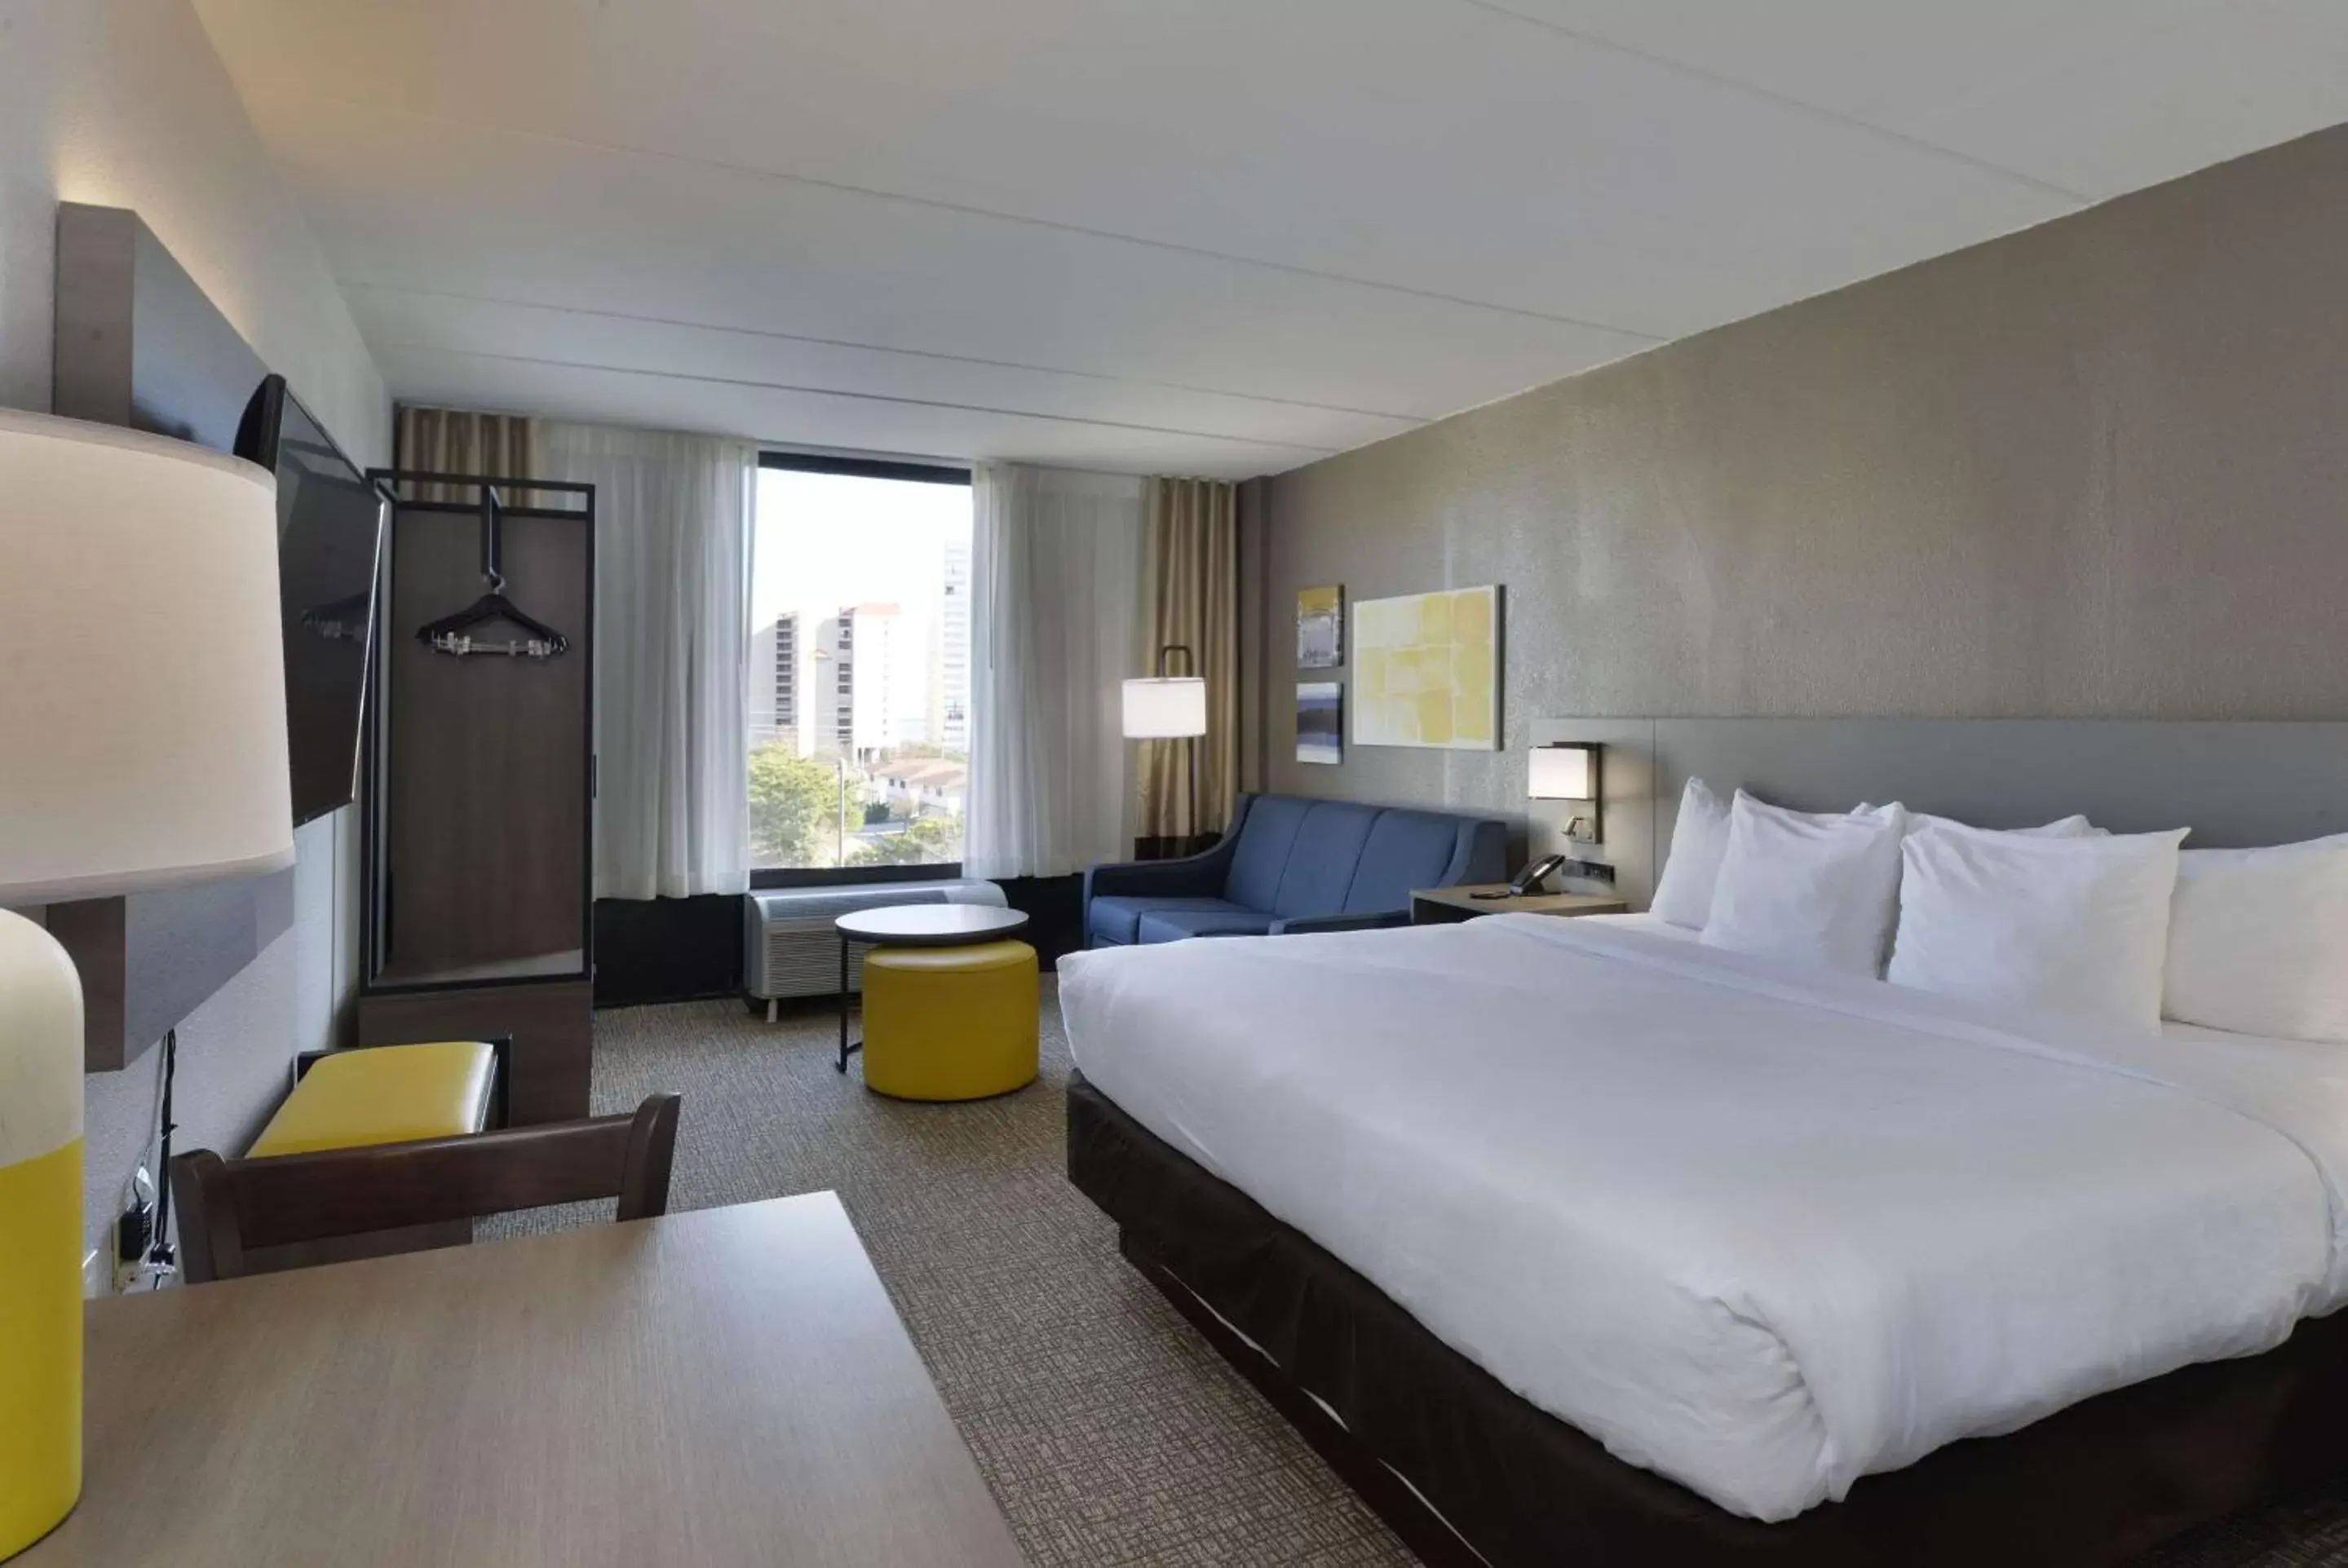 Bedroom in Comfort Inn Gold Coast